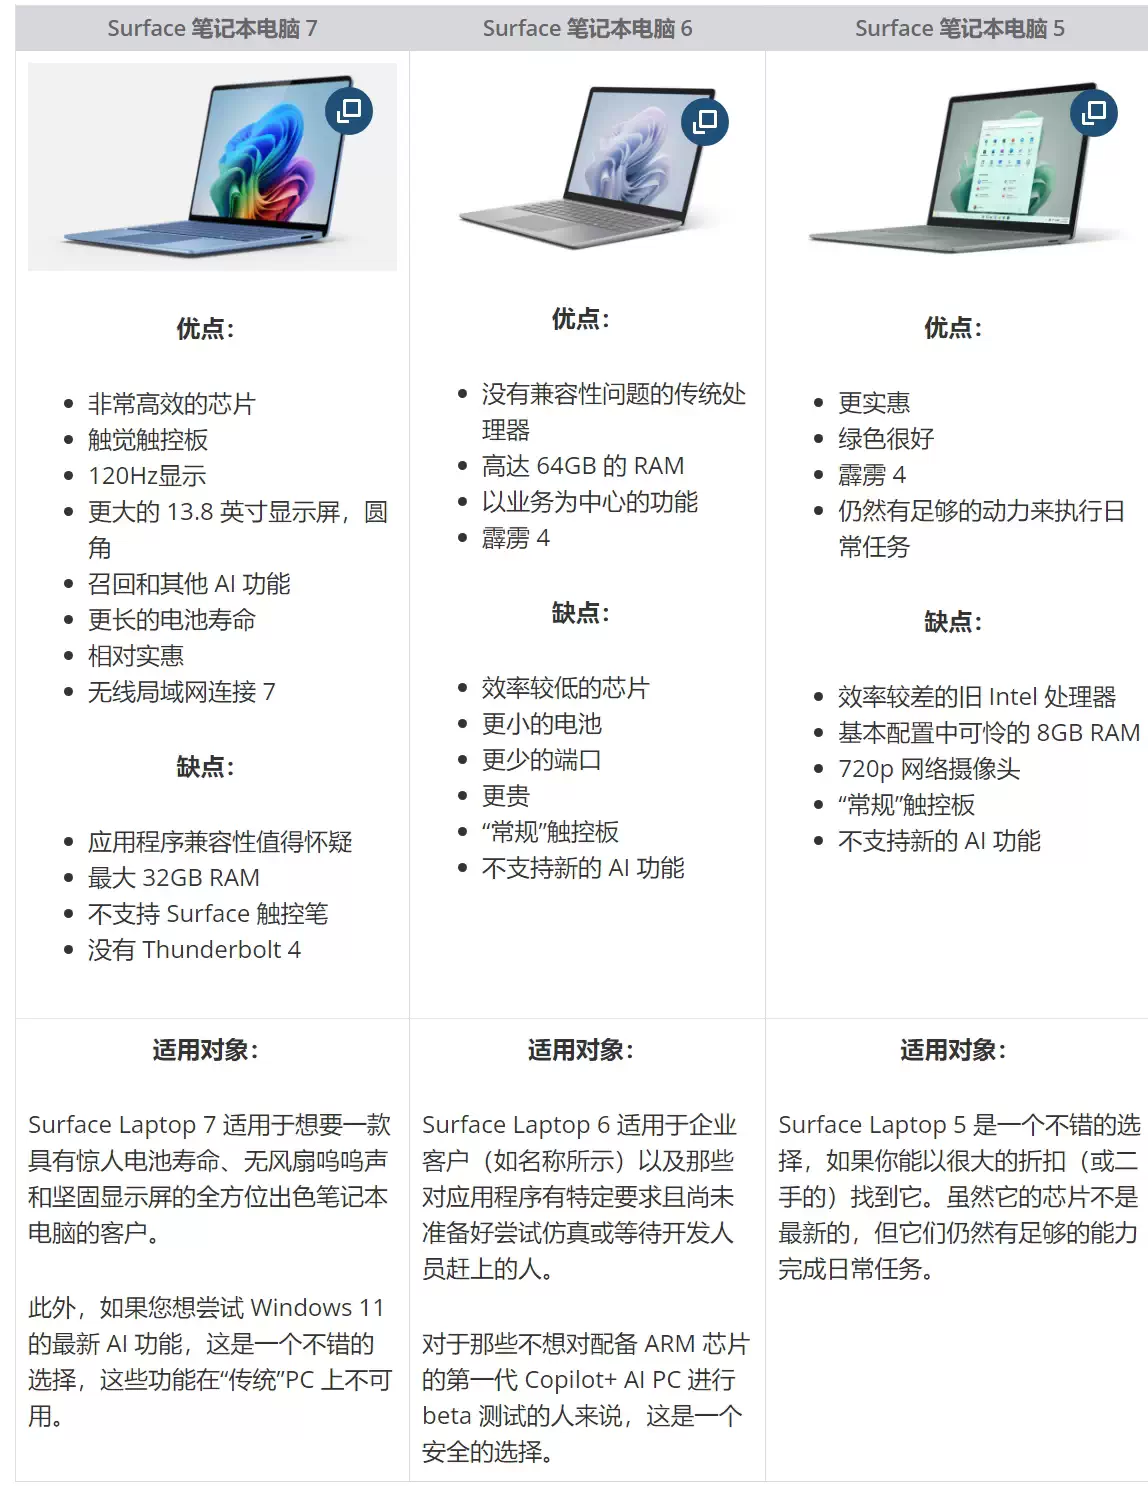 新款 Surface Laptop 7 与 Laptop 6 和 Laptop 5 规格对比插图1